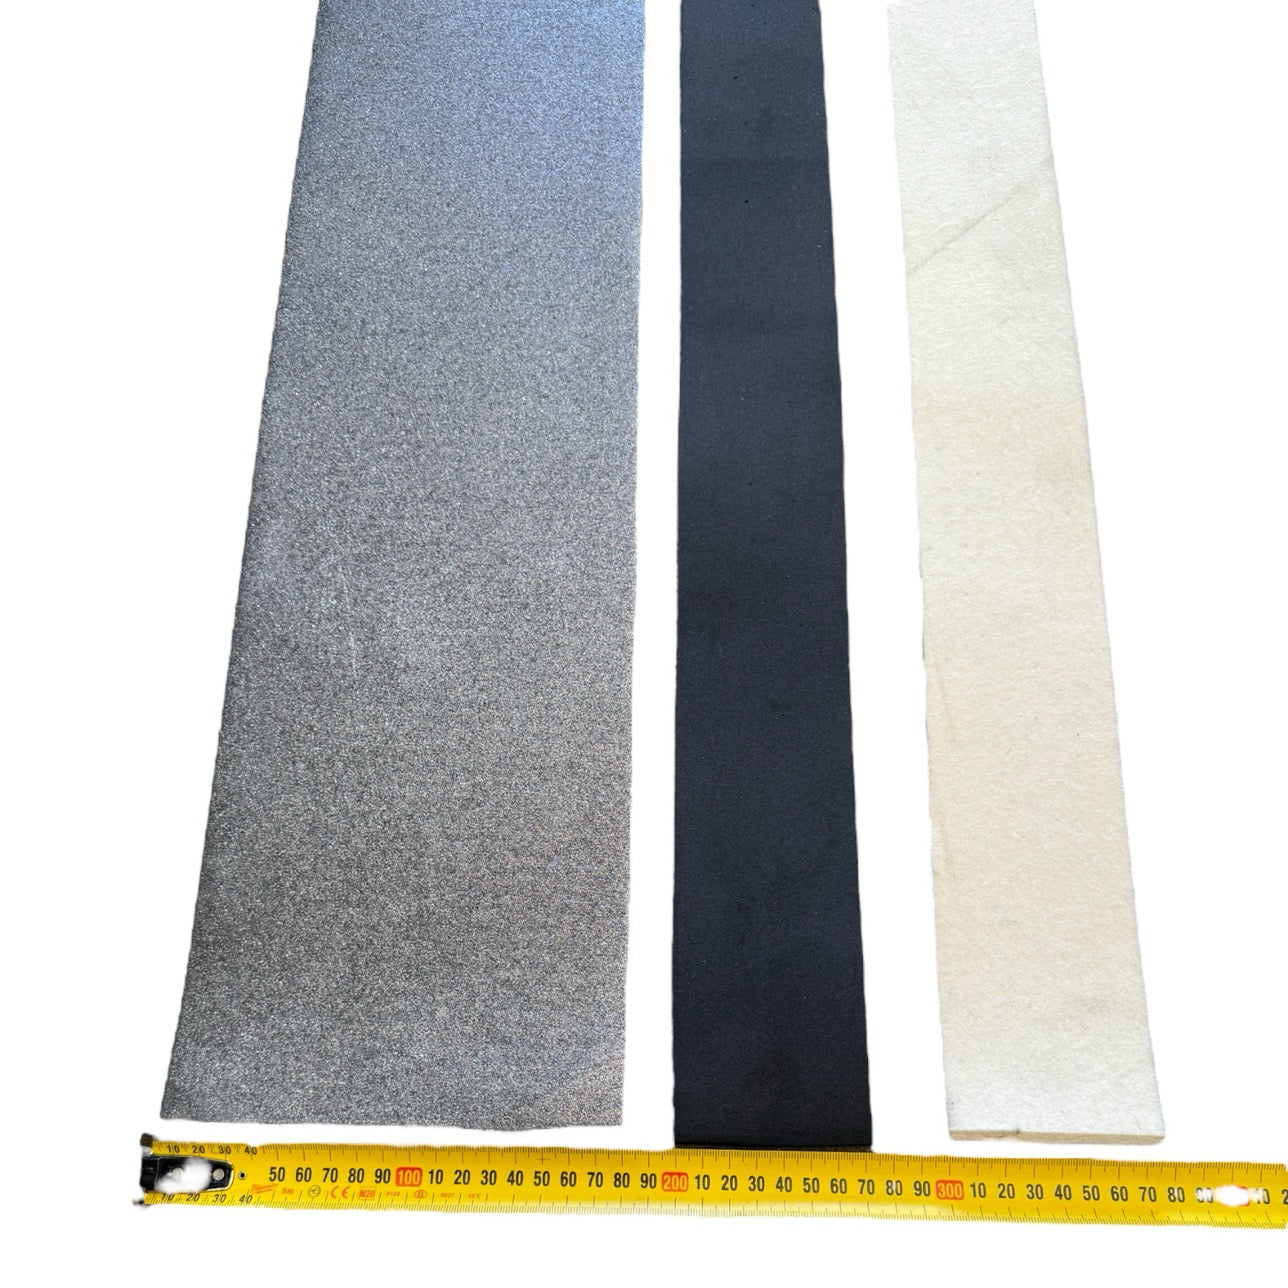 3Pce Platinum Pad Carbon, Foam, Felt For Widebelt Sander by Toughcut